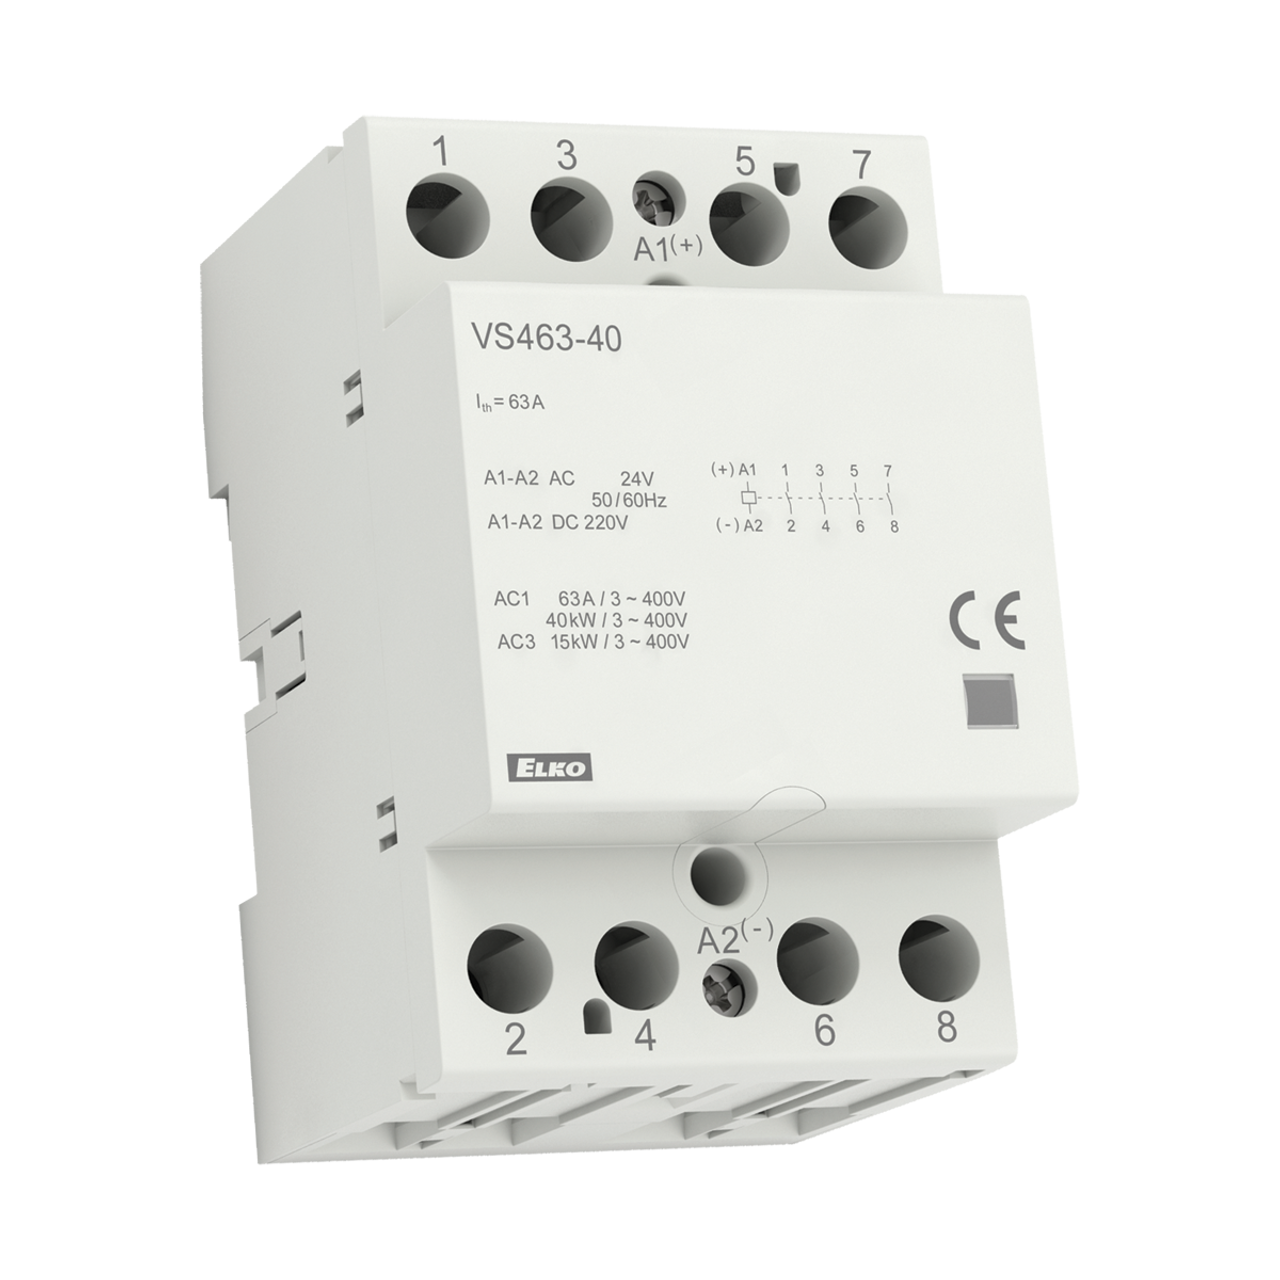 ELKP VS463-40UL 120V AC/DC Power Contactor